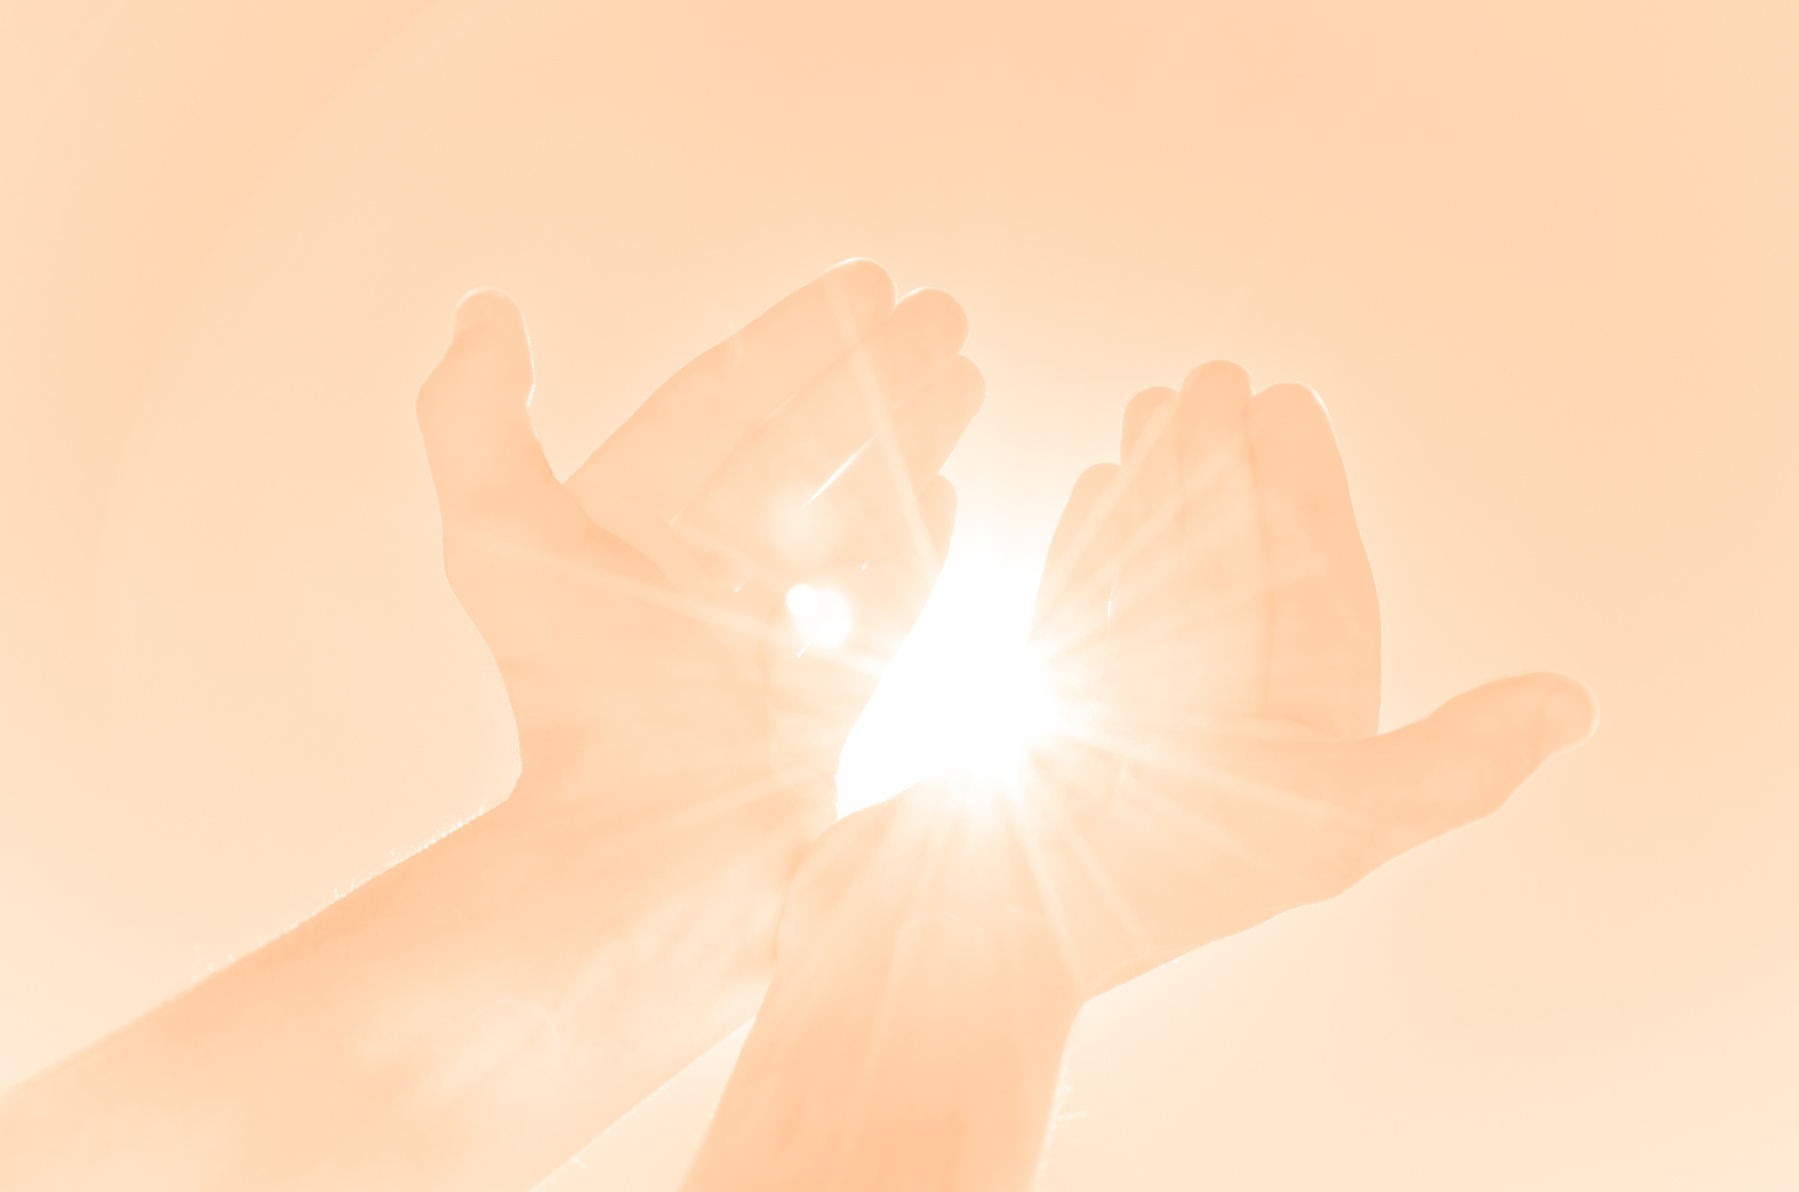 Kind hands offering light